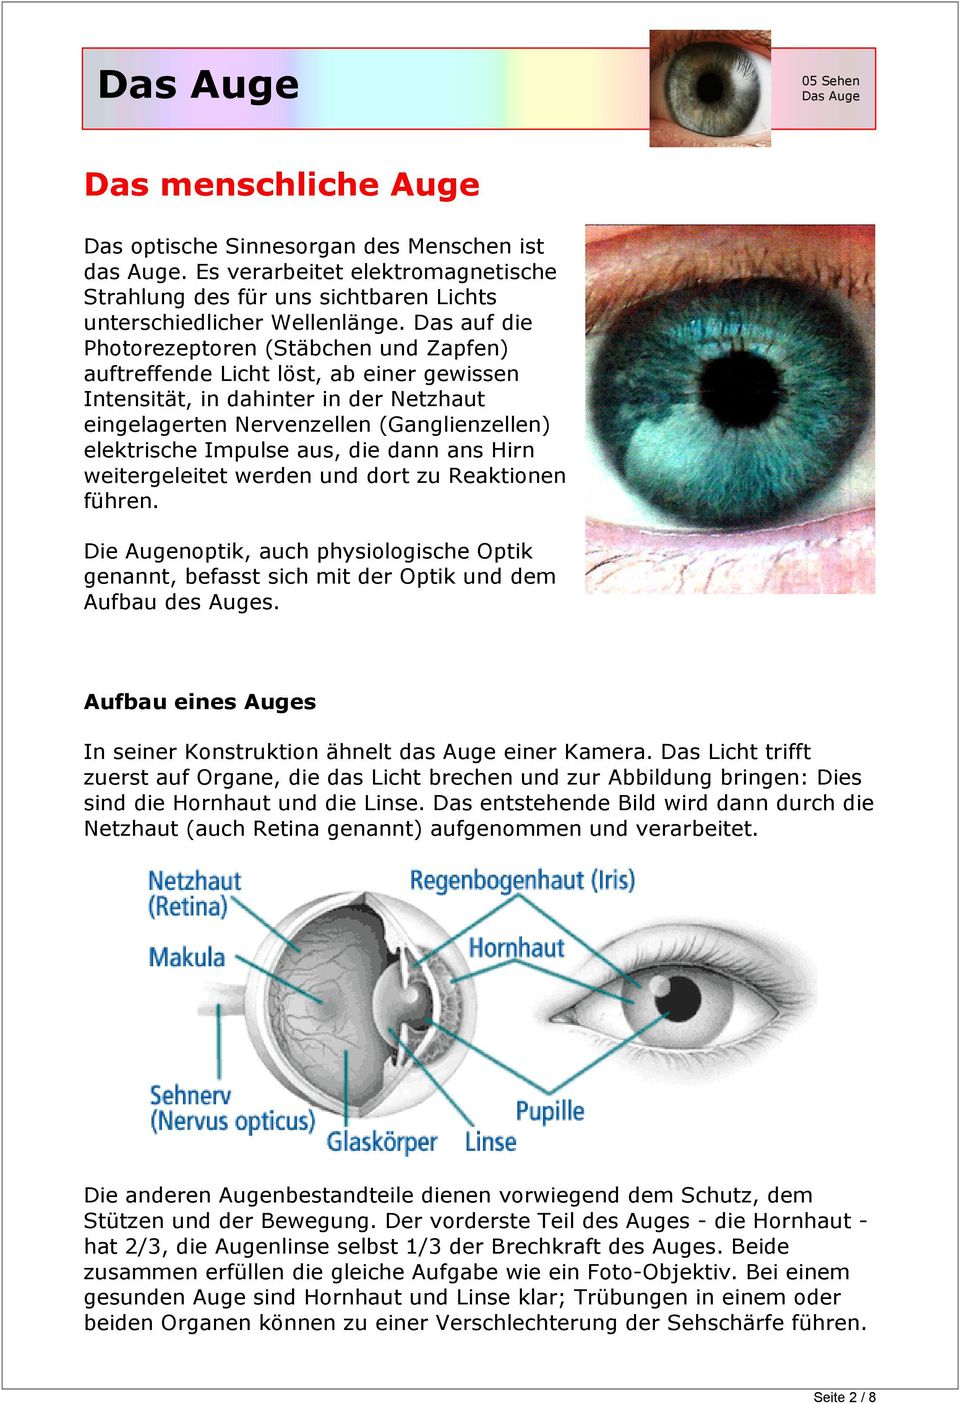 aus, die dann ans Hirn weitergeleitet werden und dort zu Reaktionen führen. Die Augenoptik, auch physiologische Optik genannt, befasst sich mit der Optik und dem Aufbau des Auges.